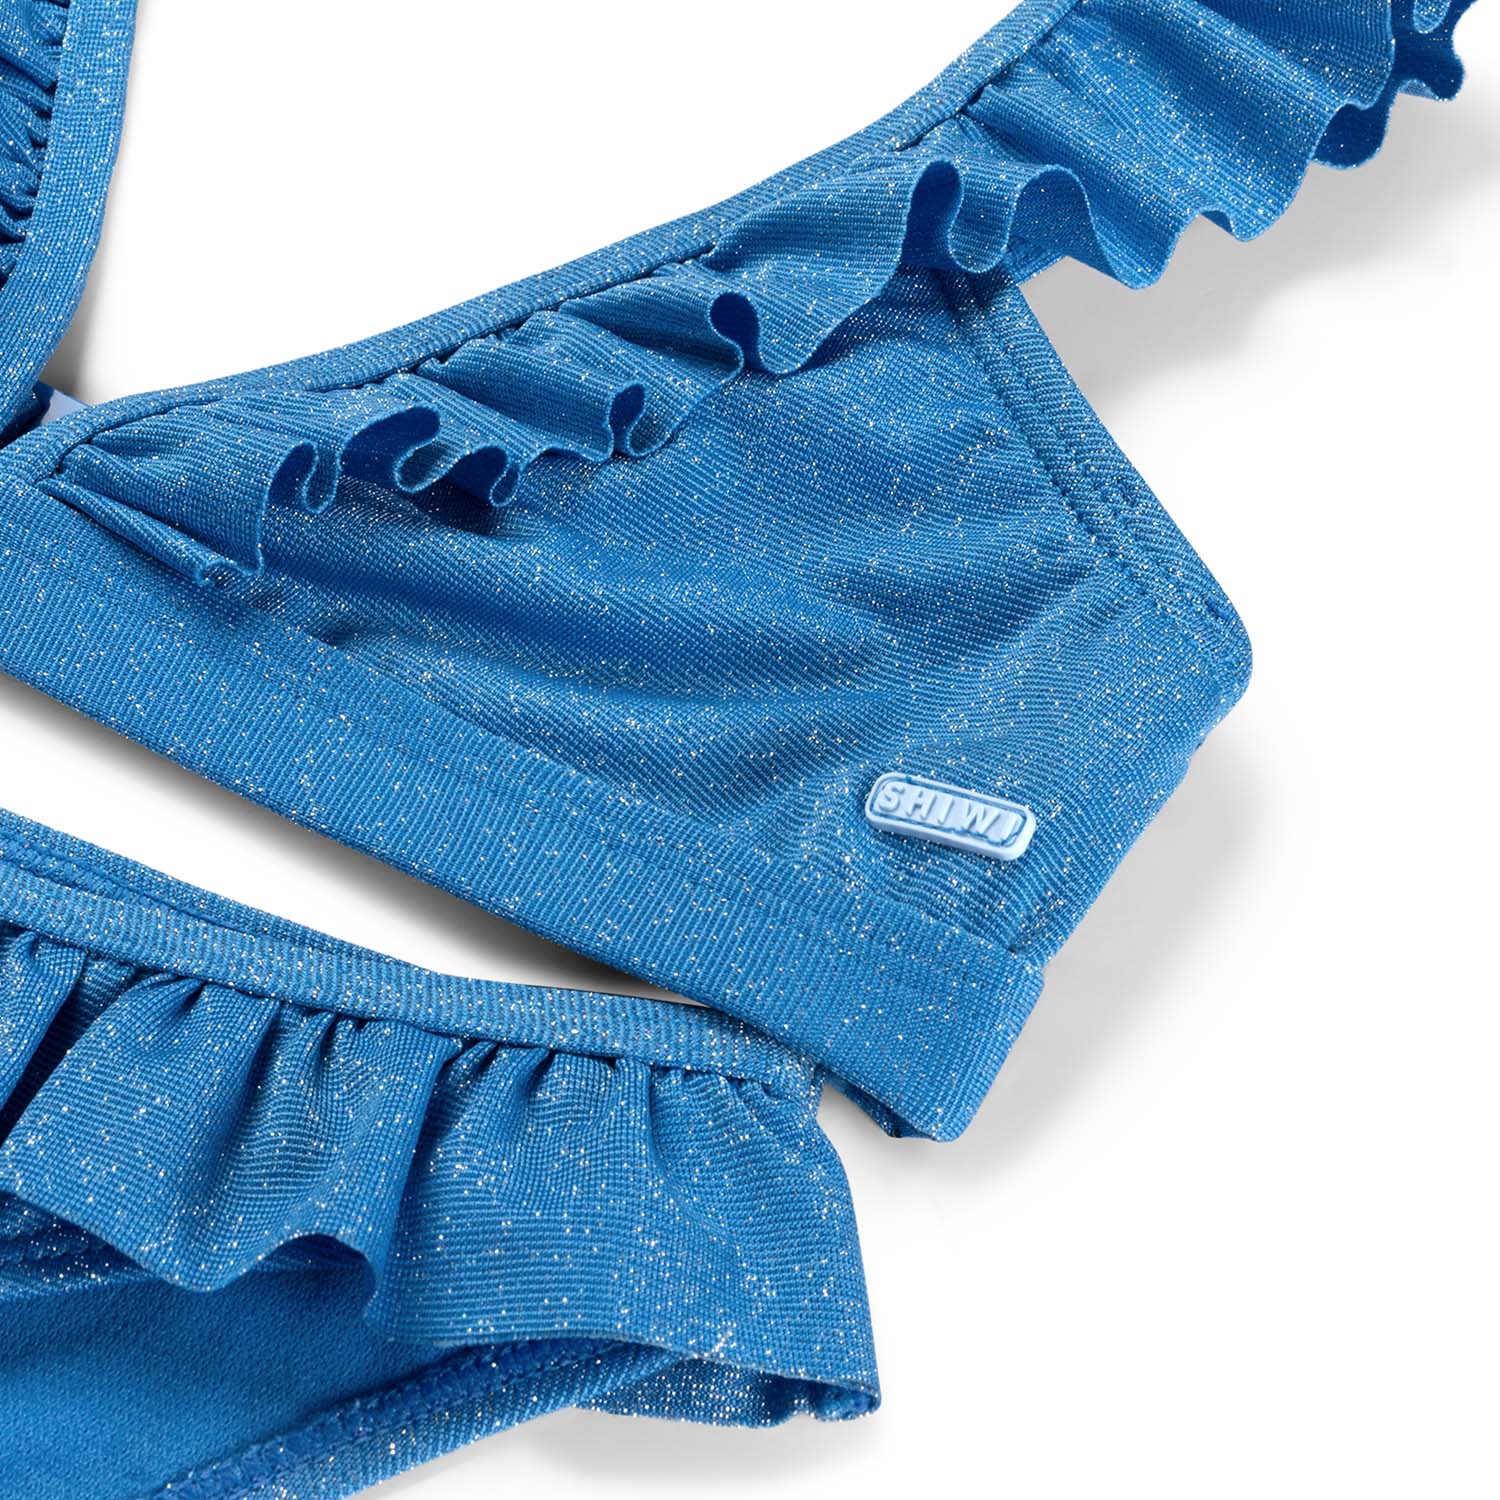 Meisjes BELLA bikini set SICILY GLITTER van Shiwi in de kleur sports blue in maat 170-176.